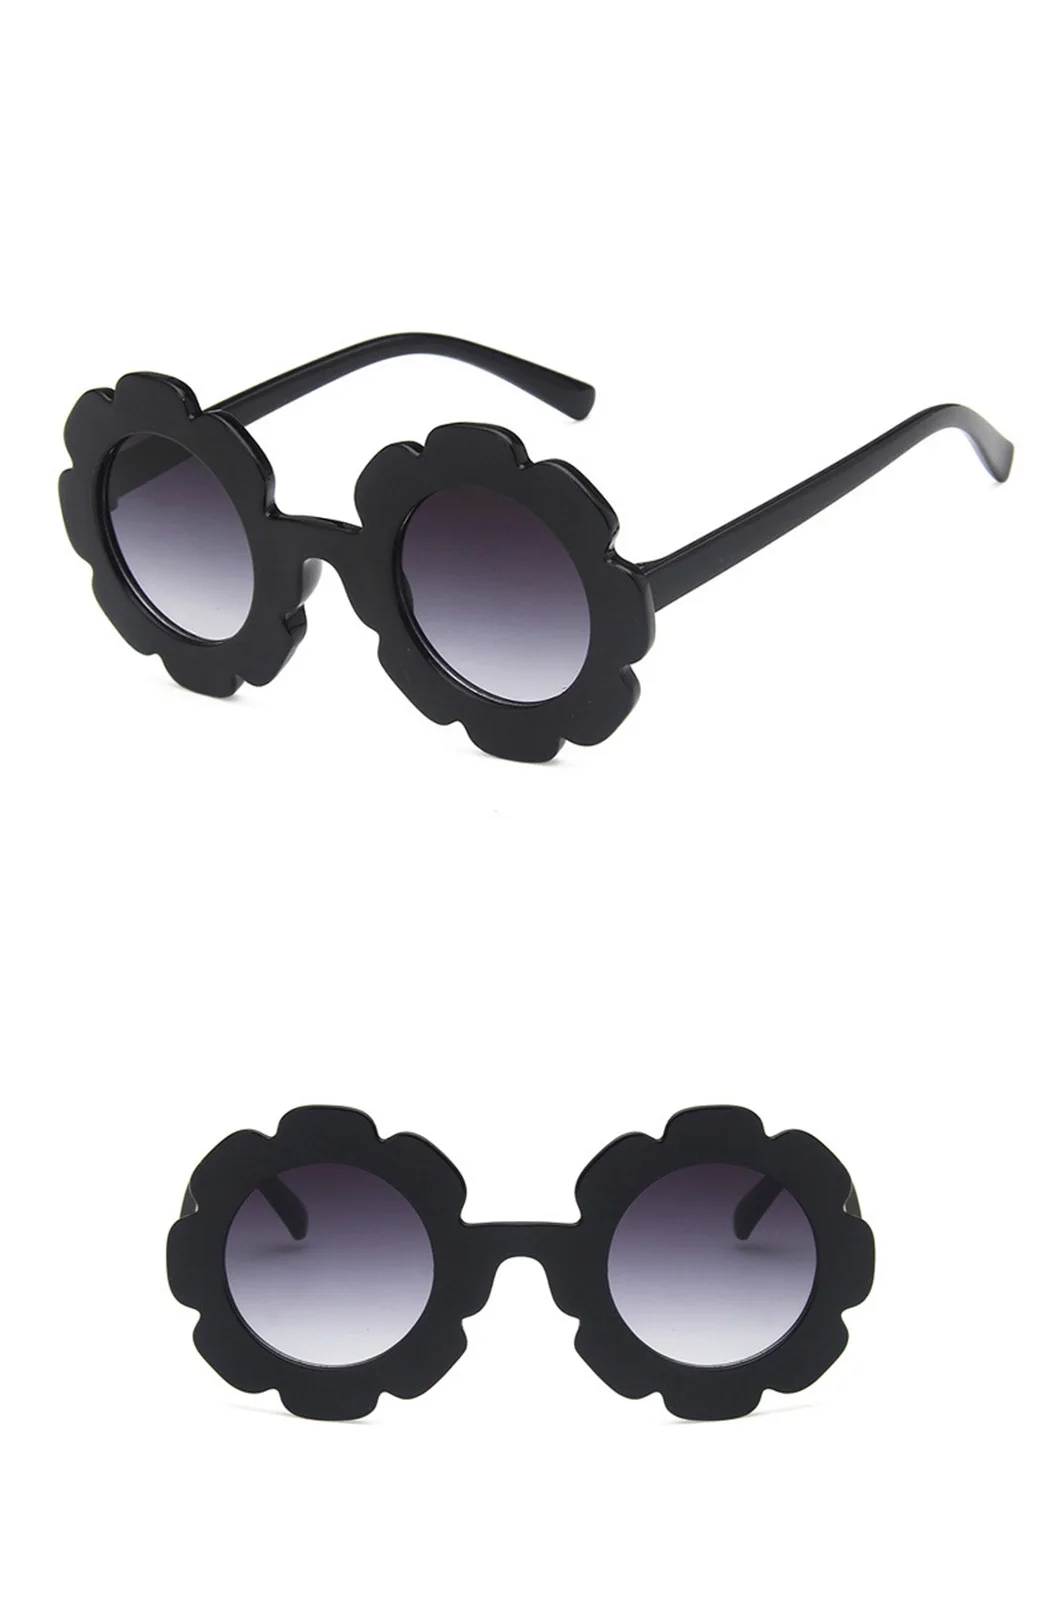 Обувь для мальчиков девочек милые рамка с цветами солнцезащитные очки женщин детей круглый прозрачная смола объектив UV400 защиты